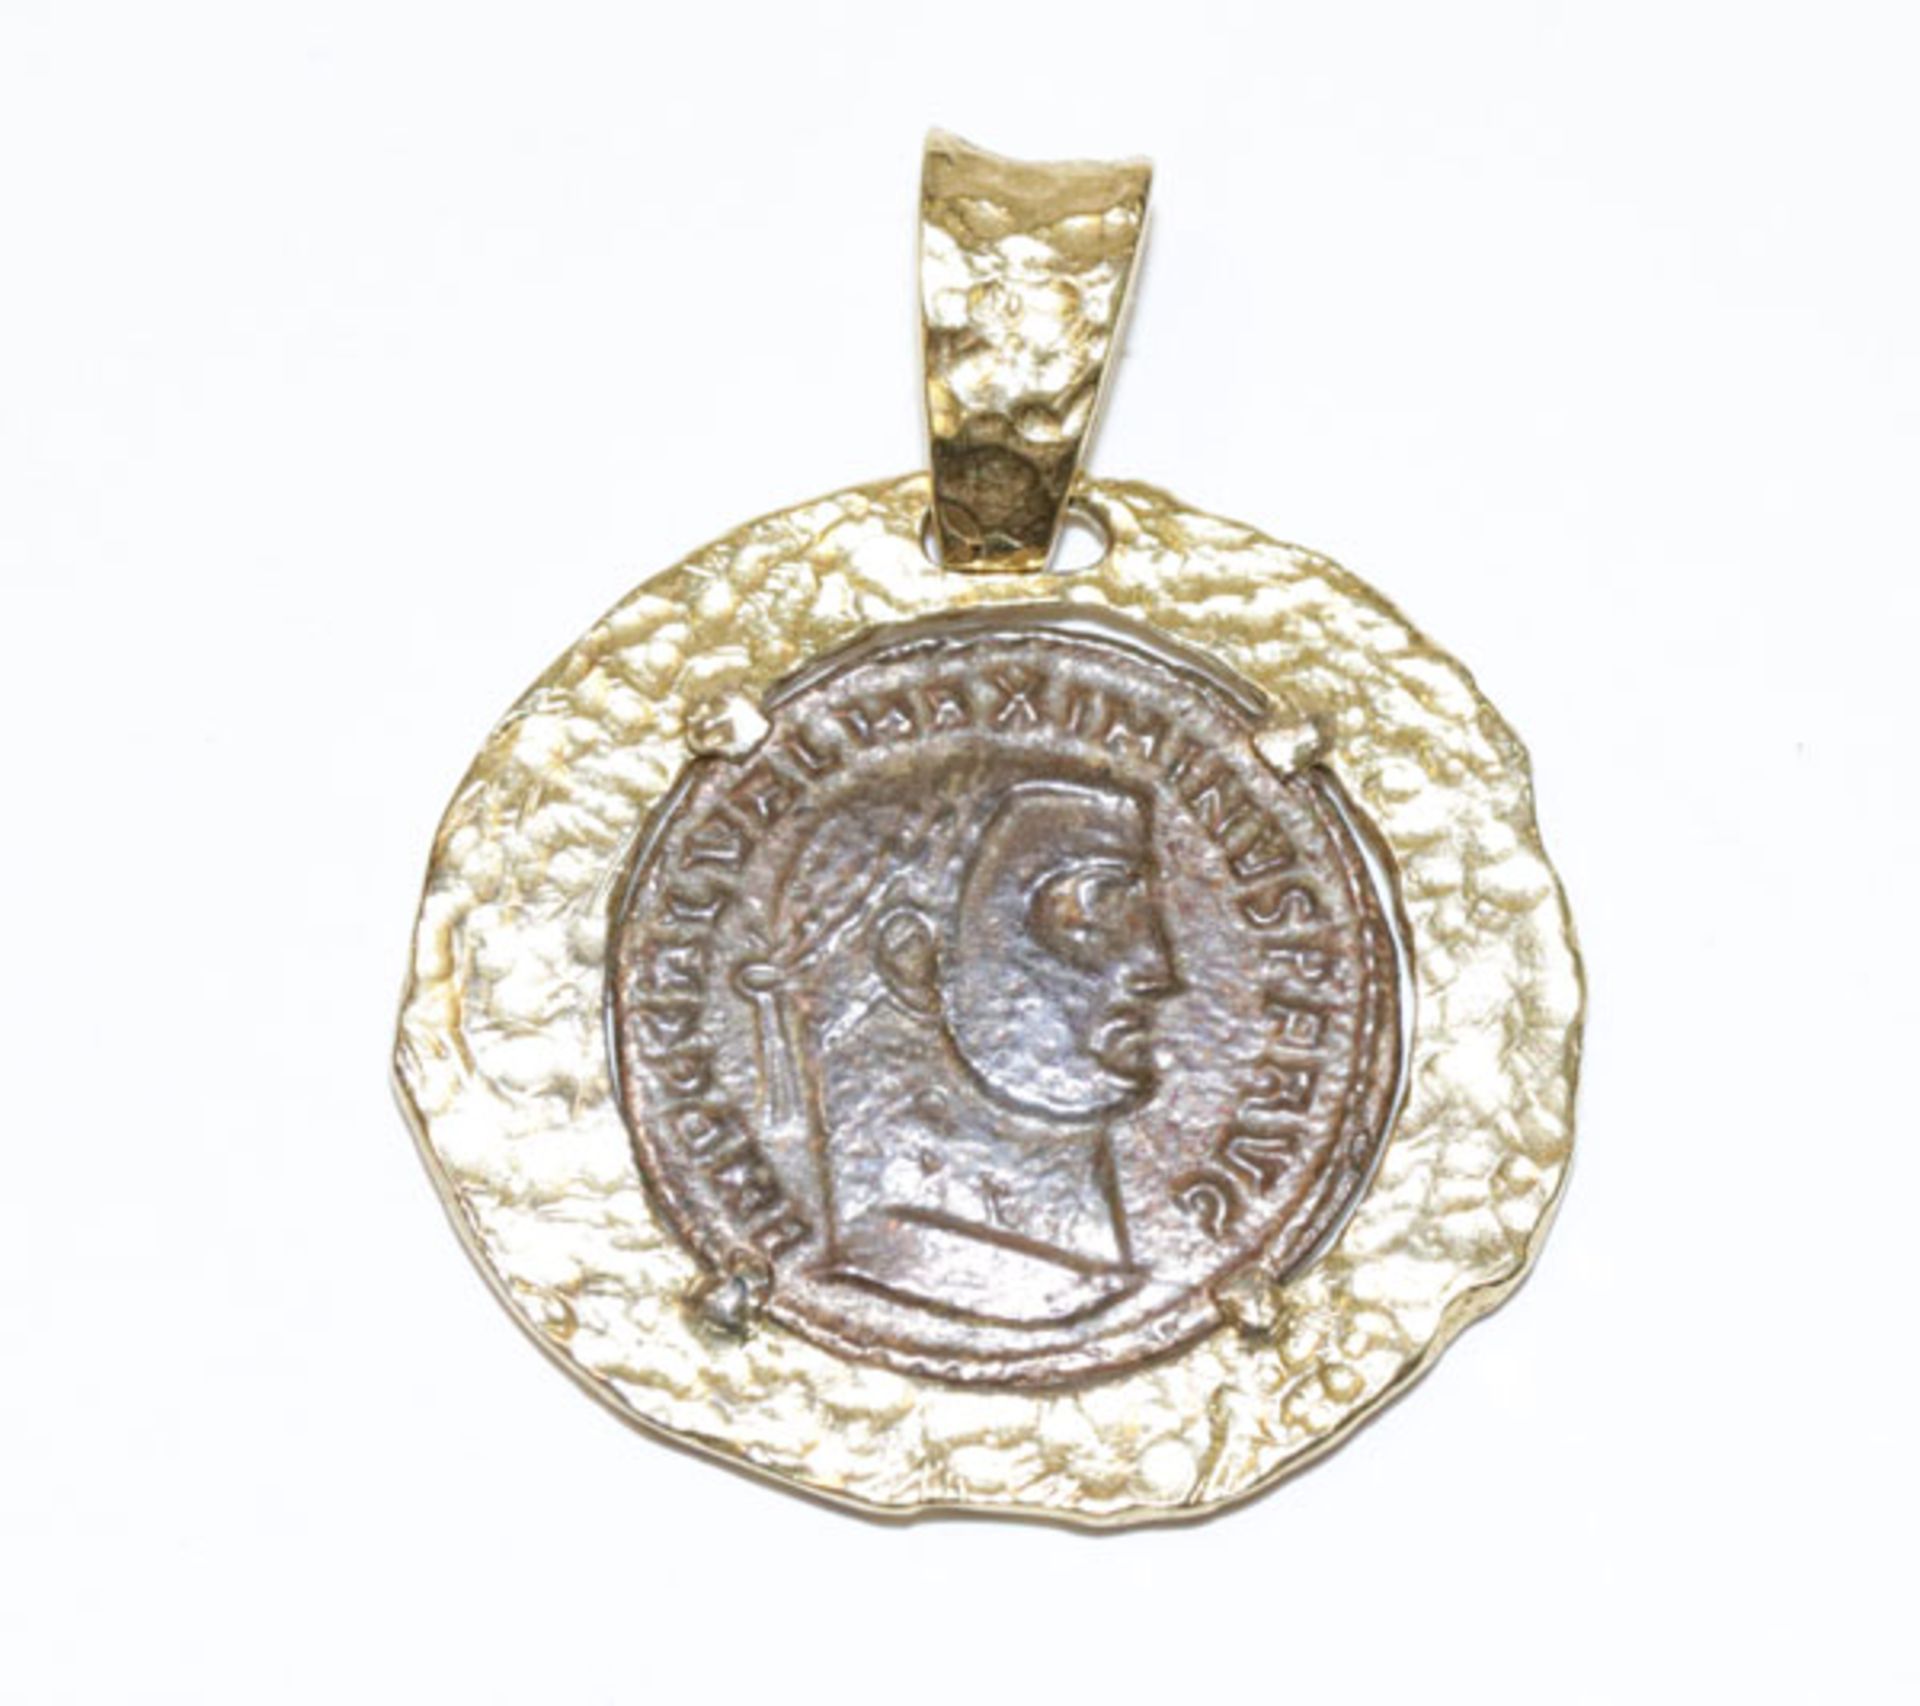 Anhänger, Römische Münze in Silber/vergoldeter Fassung, gehämmerte Optik, D 3 cm, leicht berieben